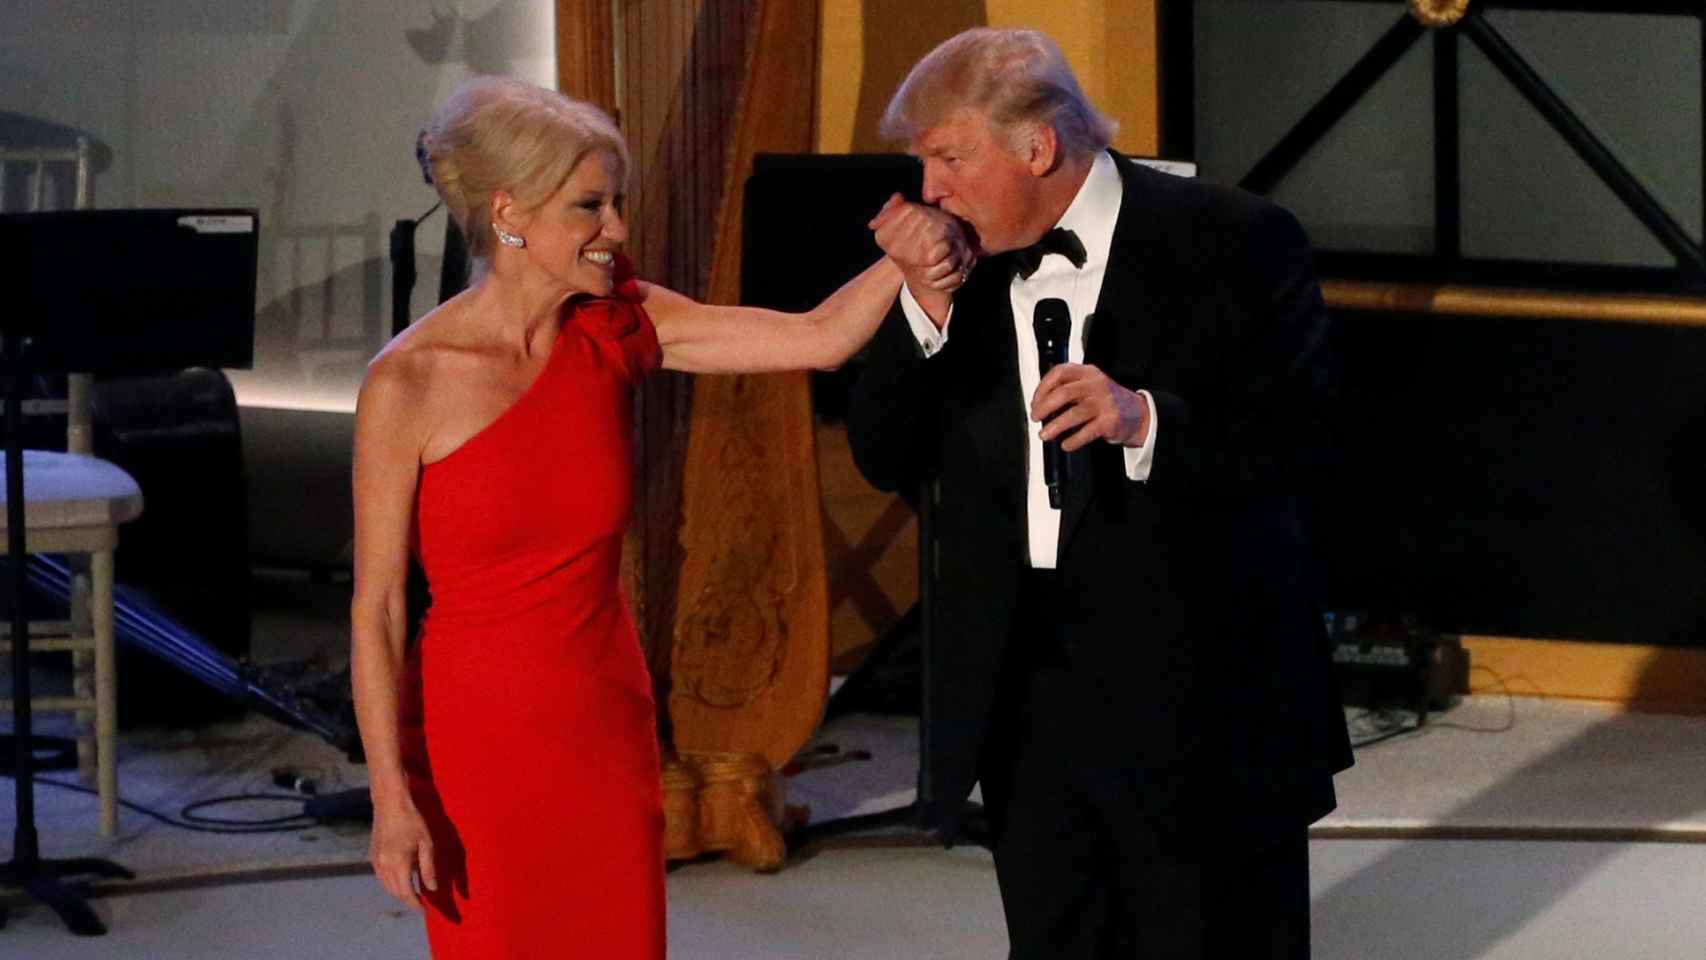 Trump besa la mano de Conway en la gala de la noche anterior a su investidura.